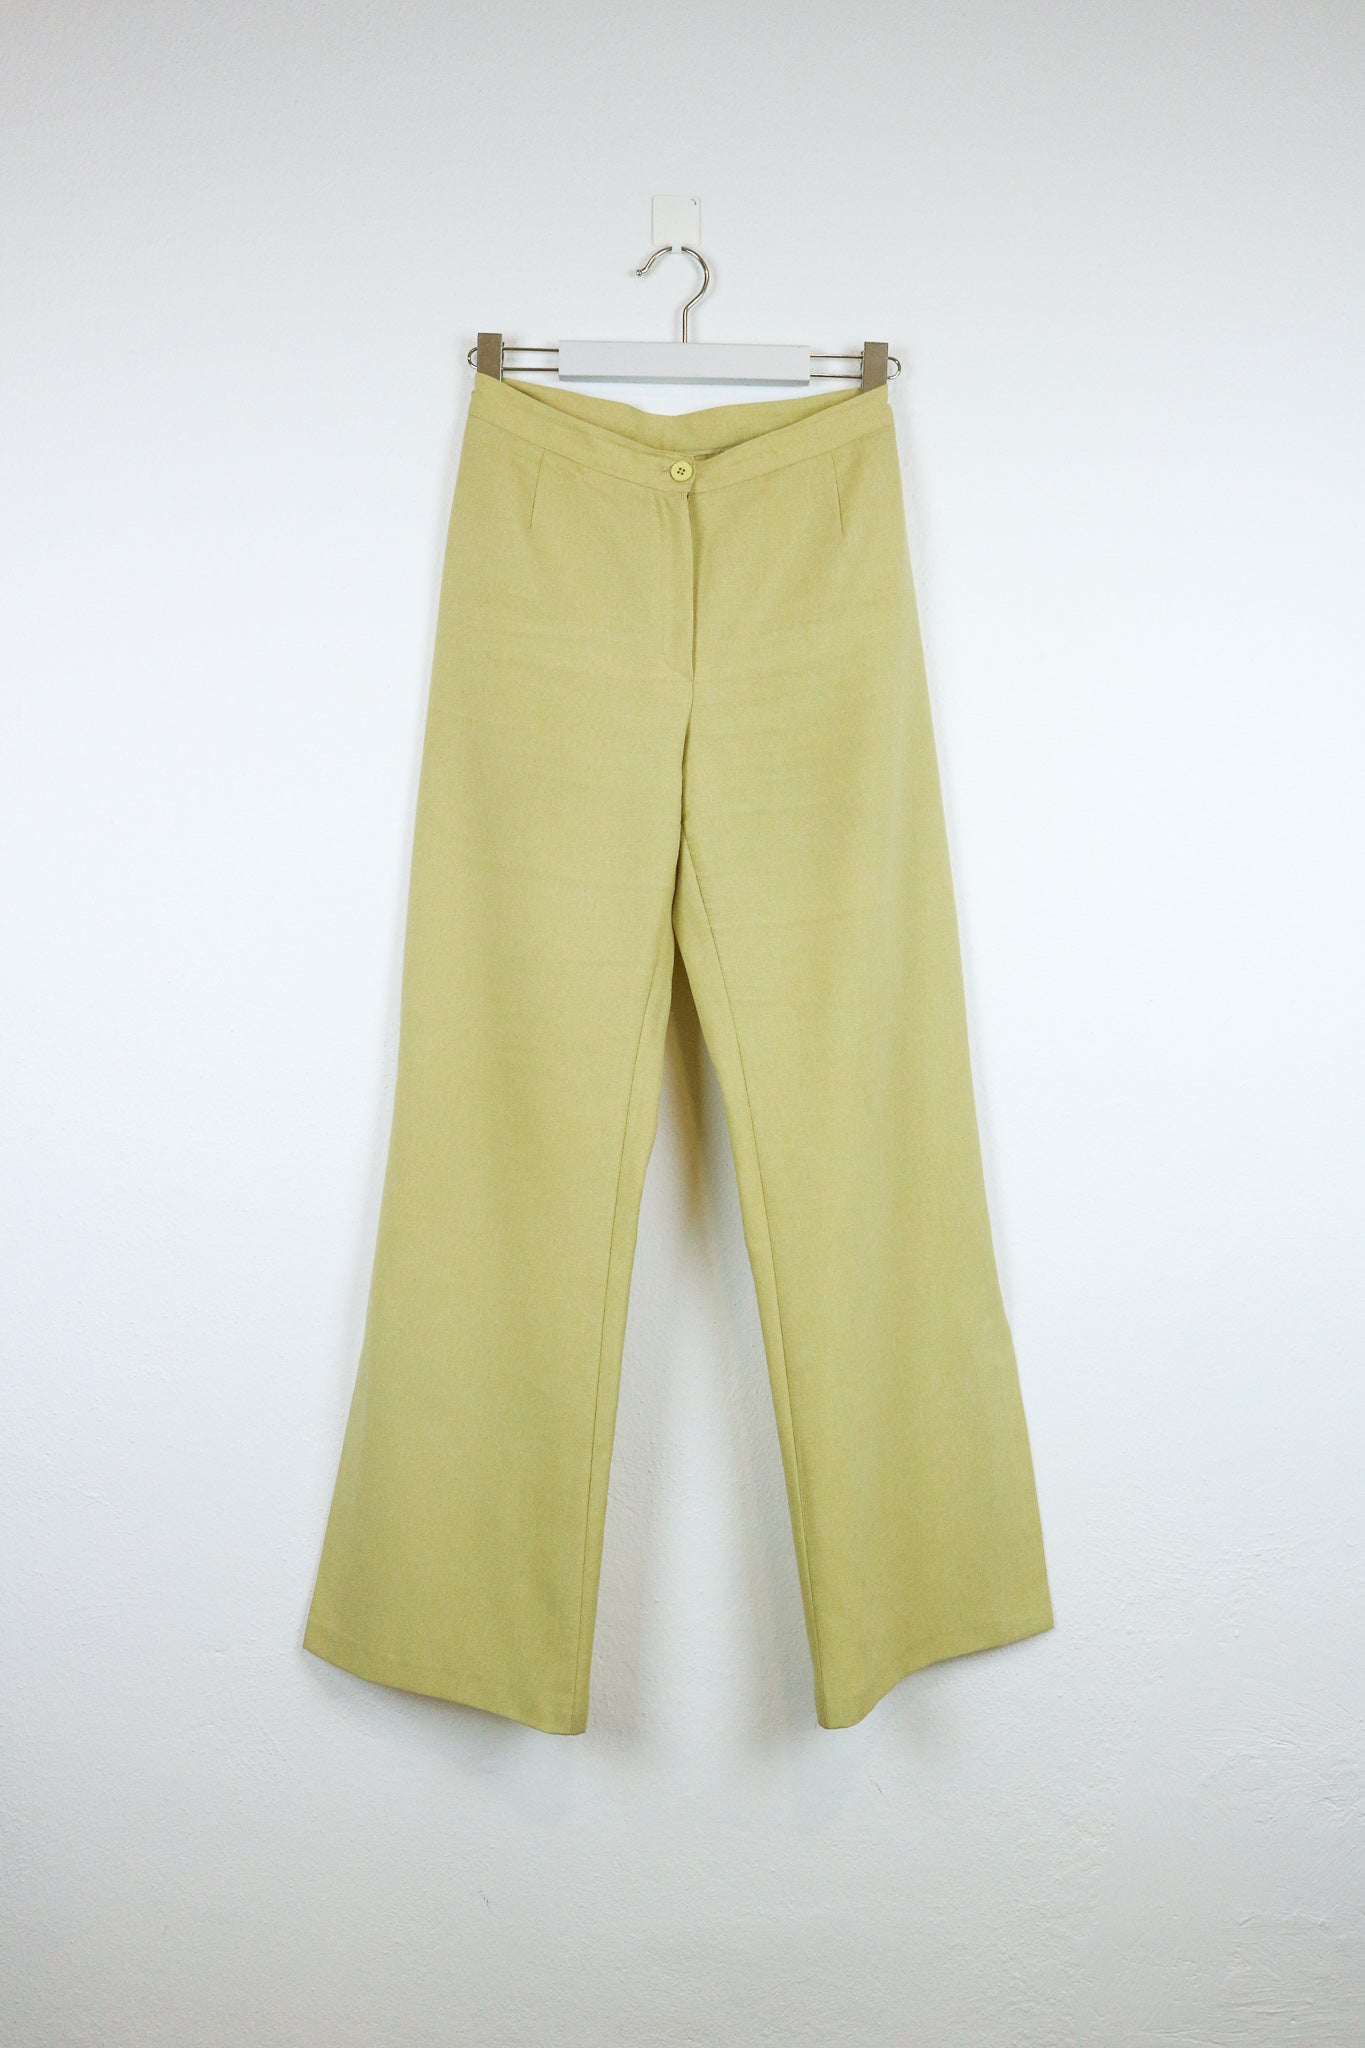 Vintage pants